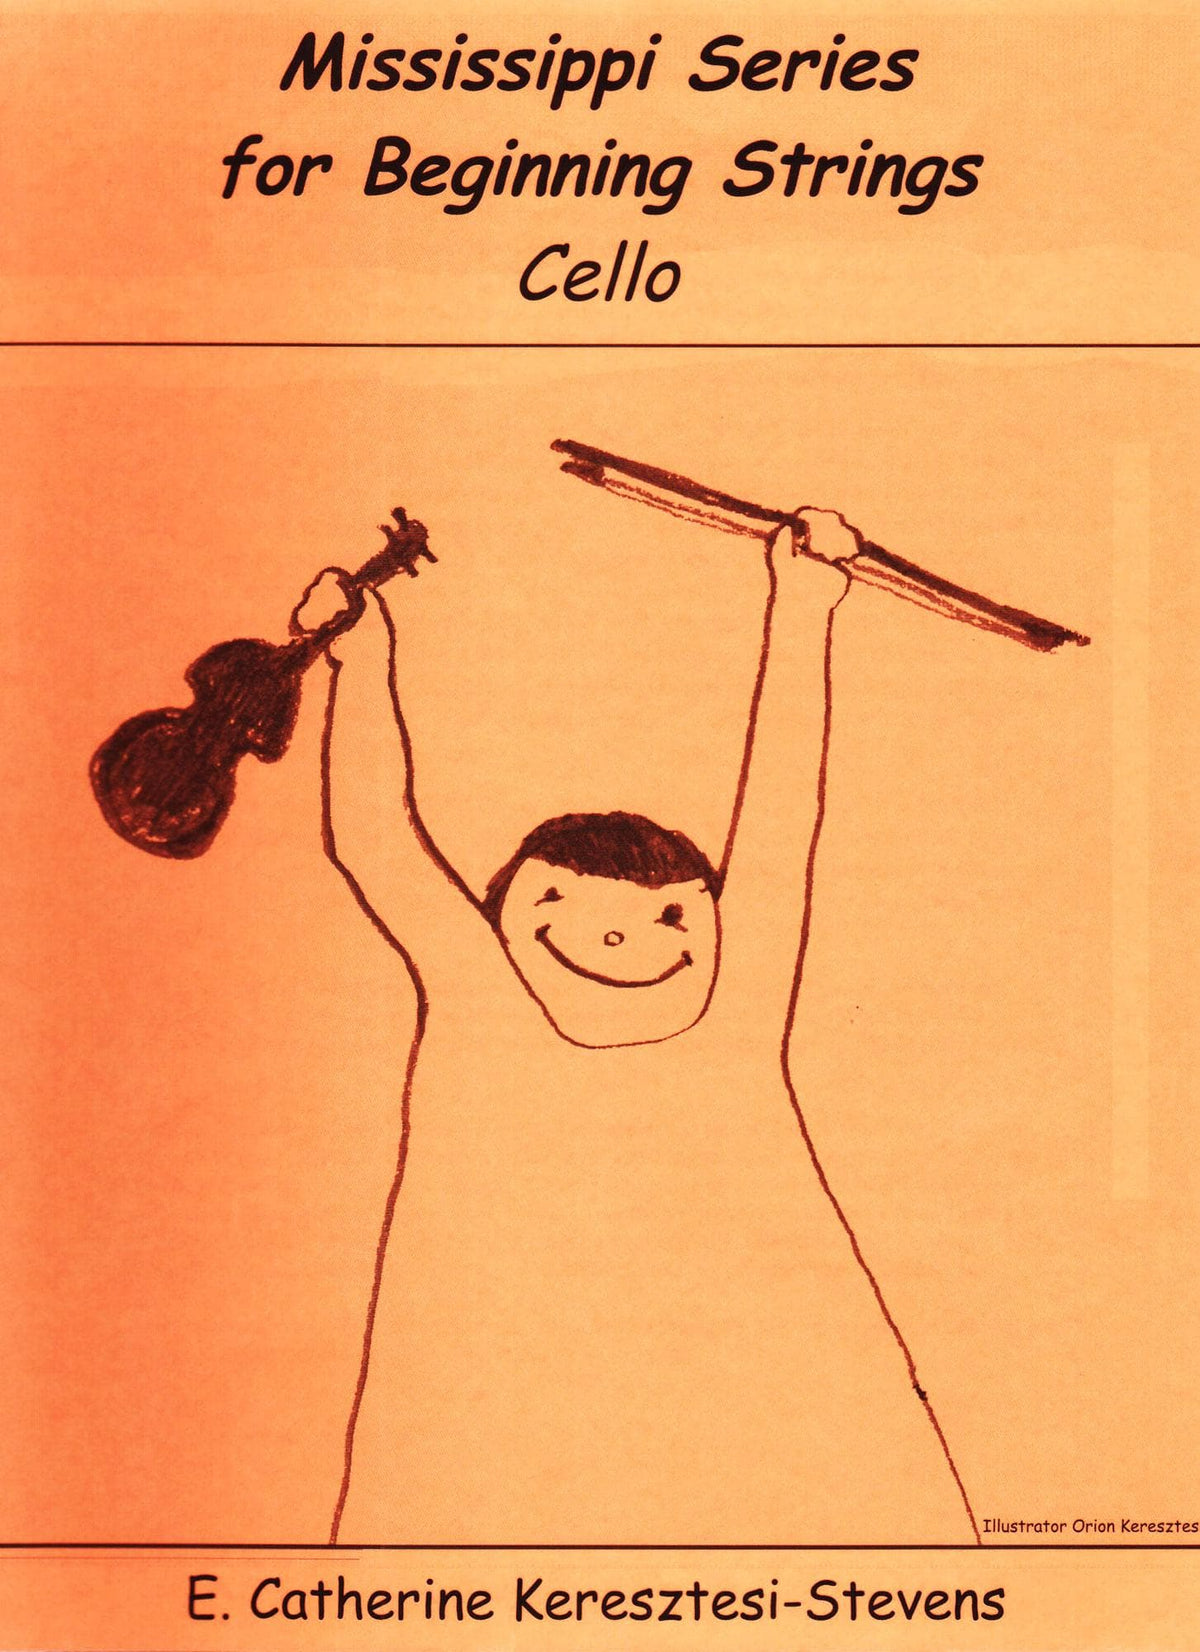 Mississippi Series for Beginning Strings - Cello book - by E. Catherine Keresztesi-Stevens